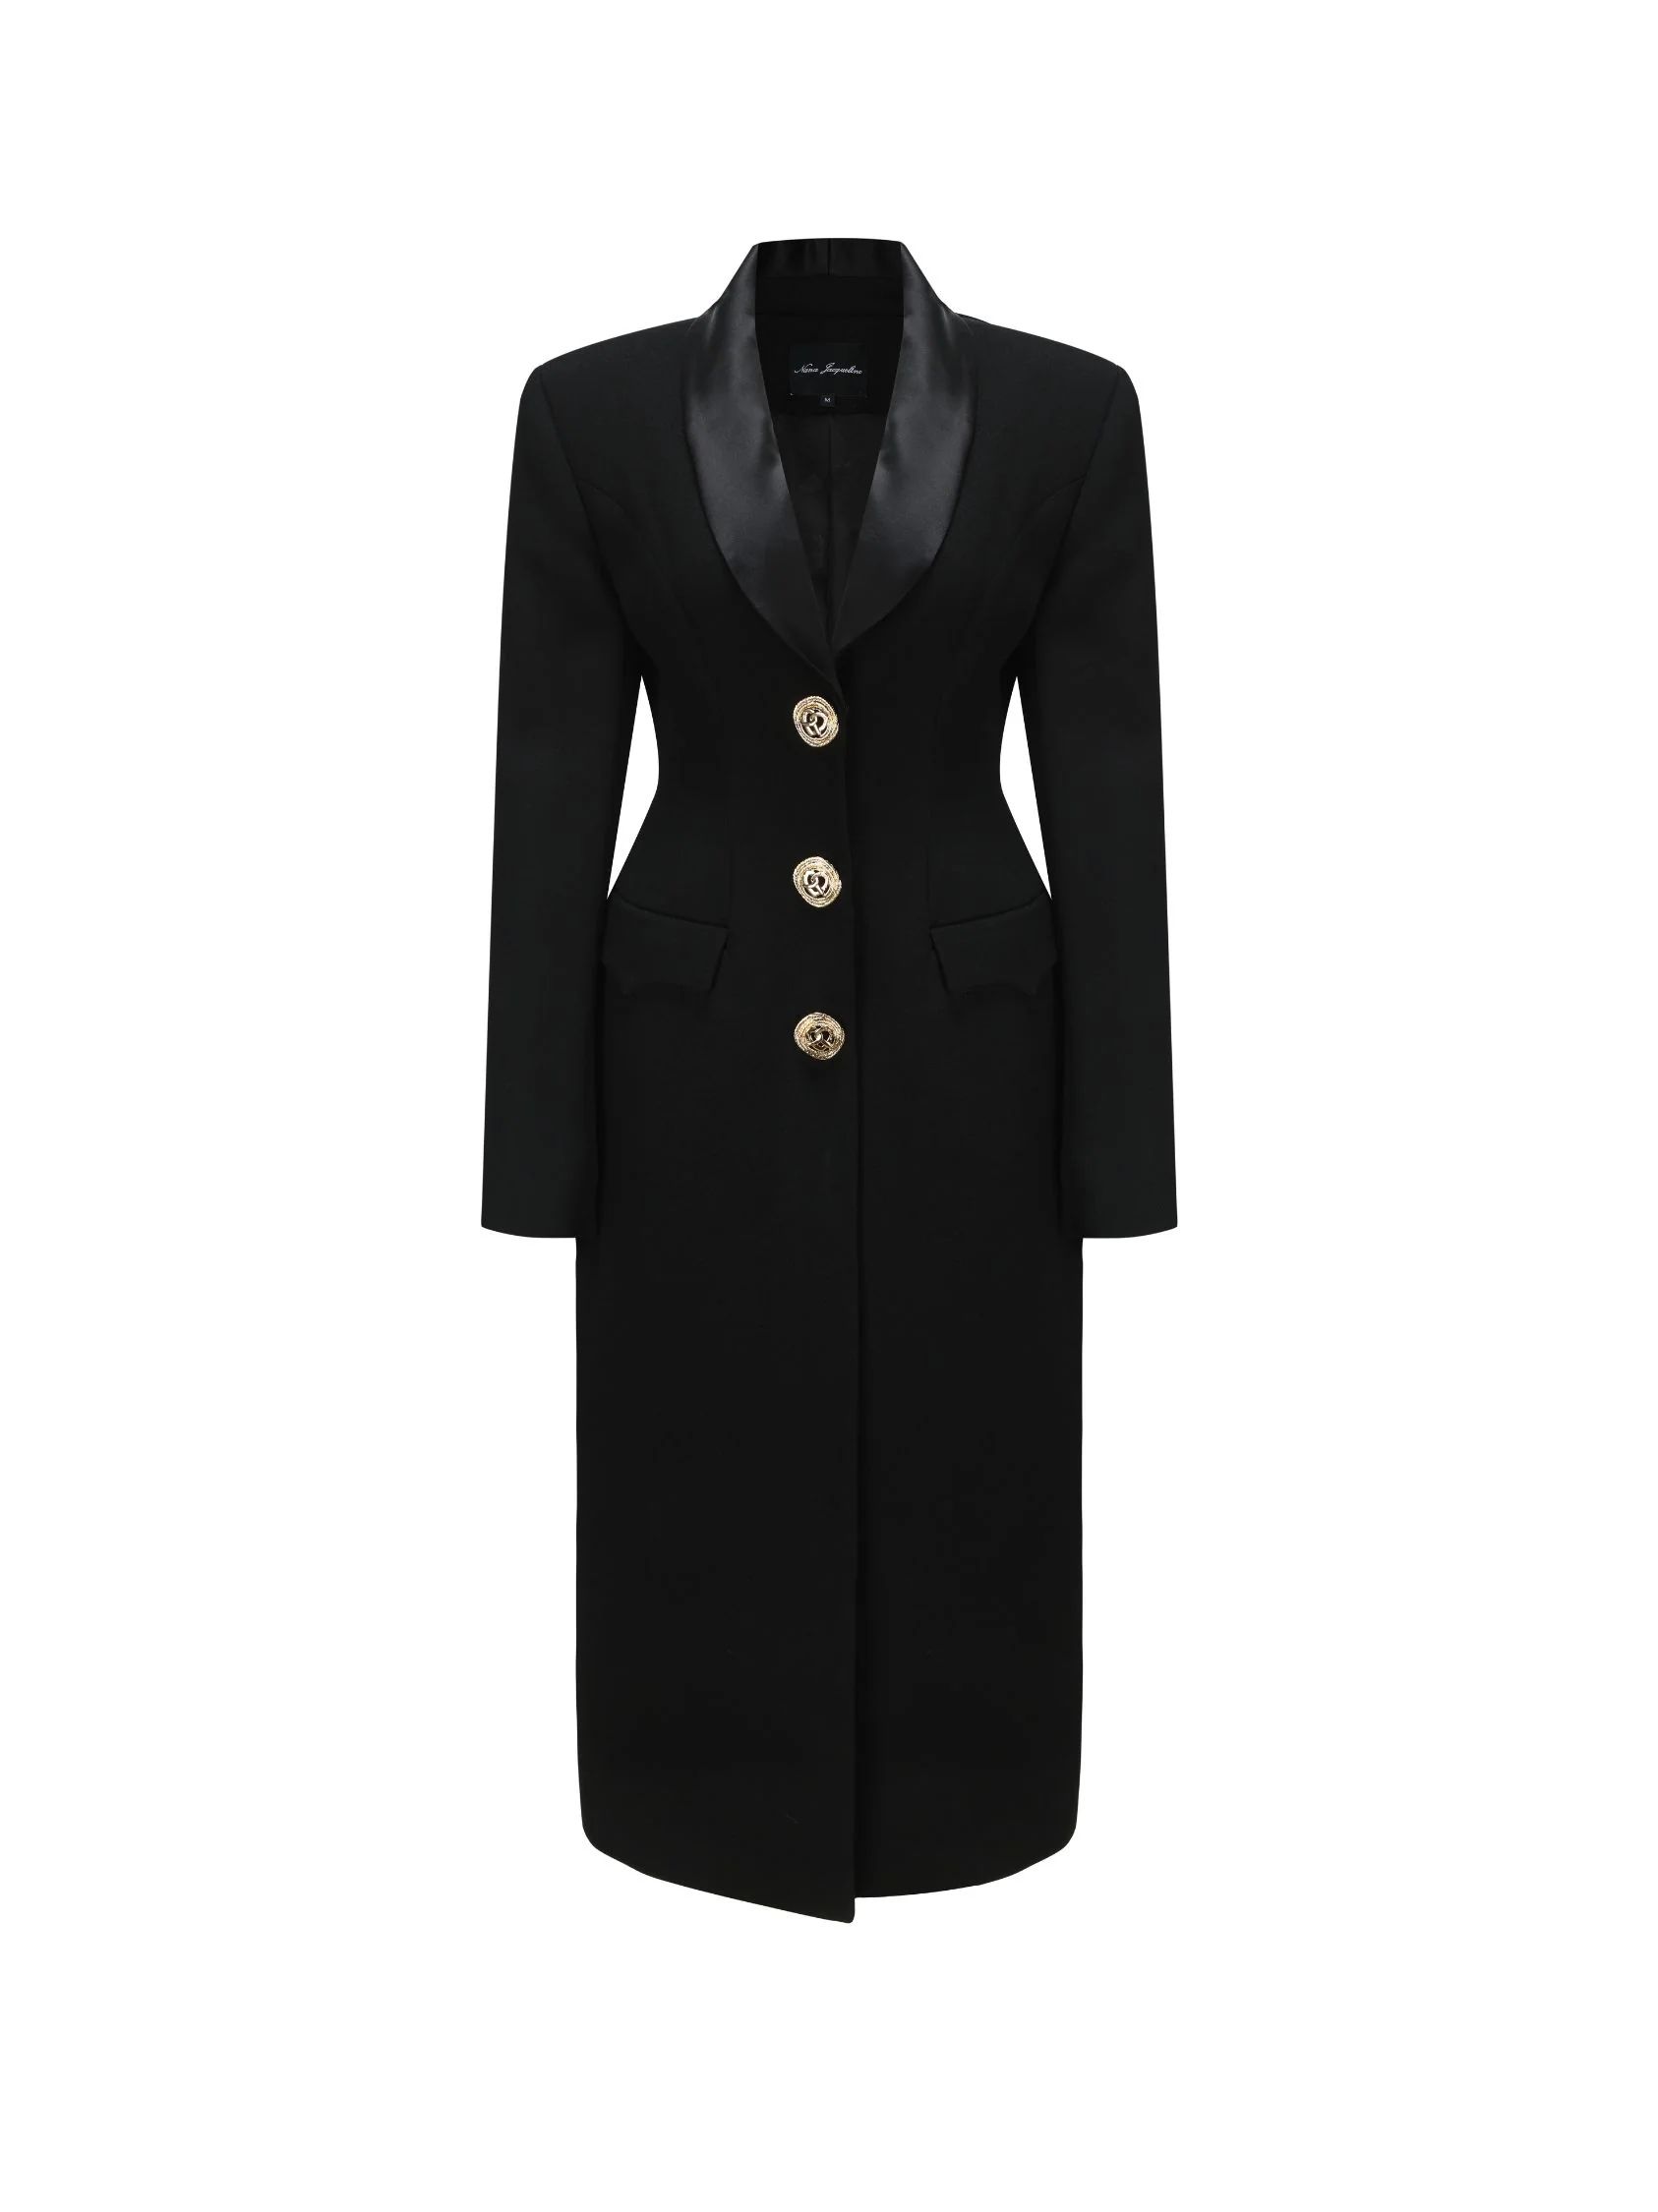 Evie Long Suit Jacket (Black) | Nana Jacqueline